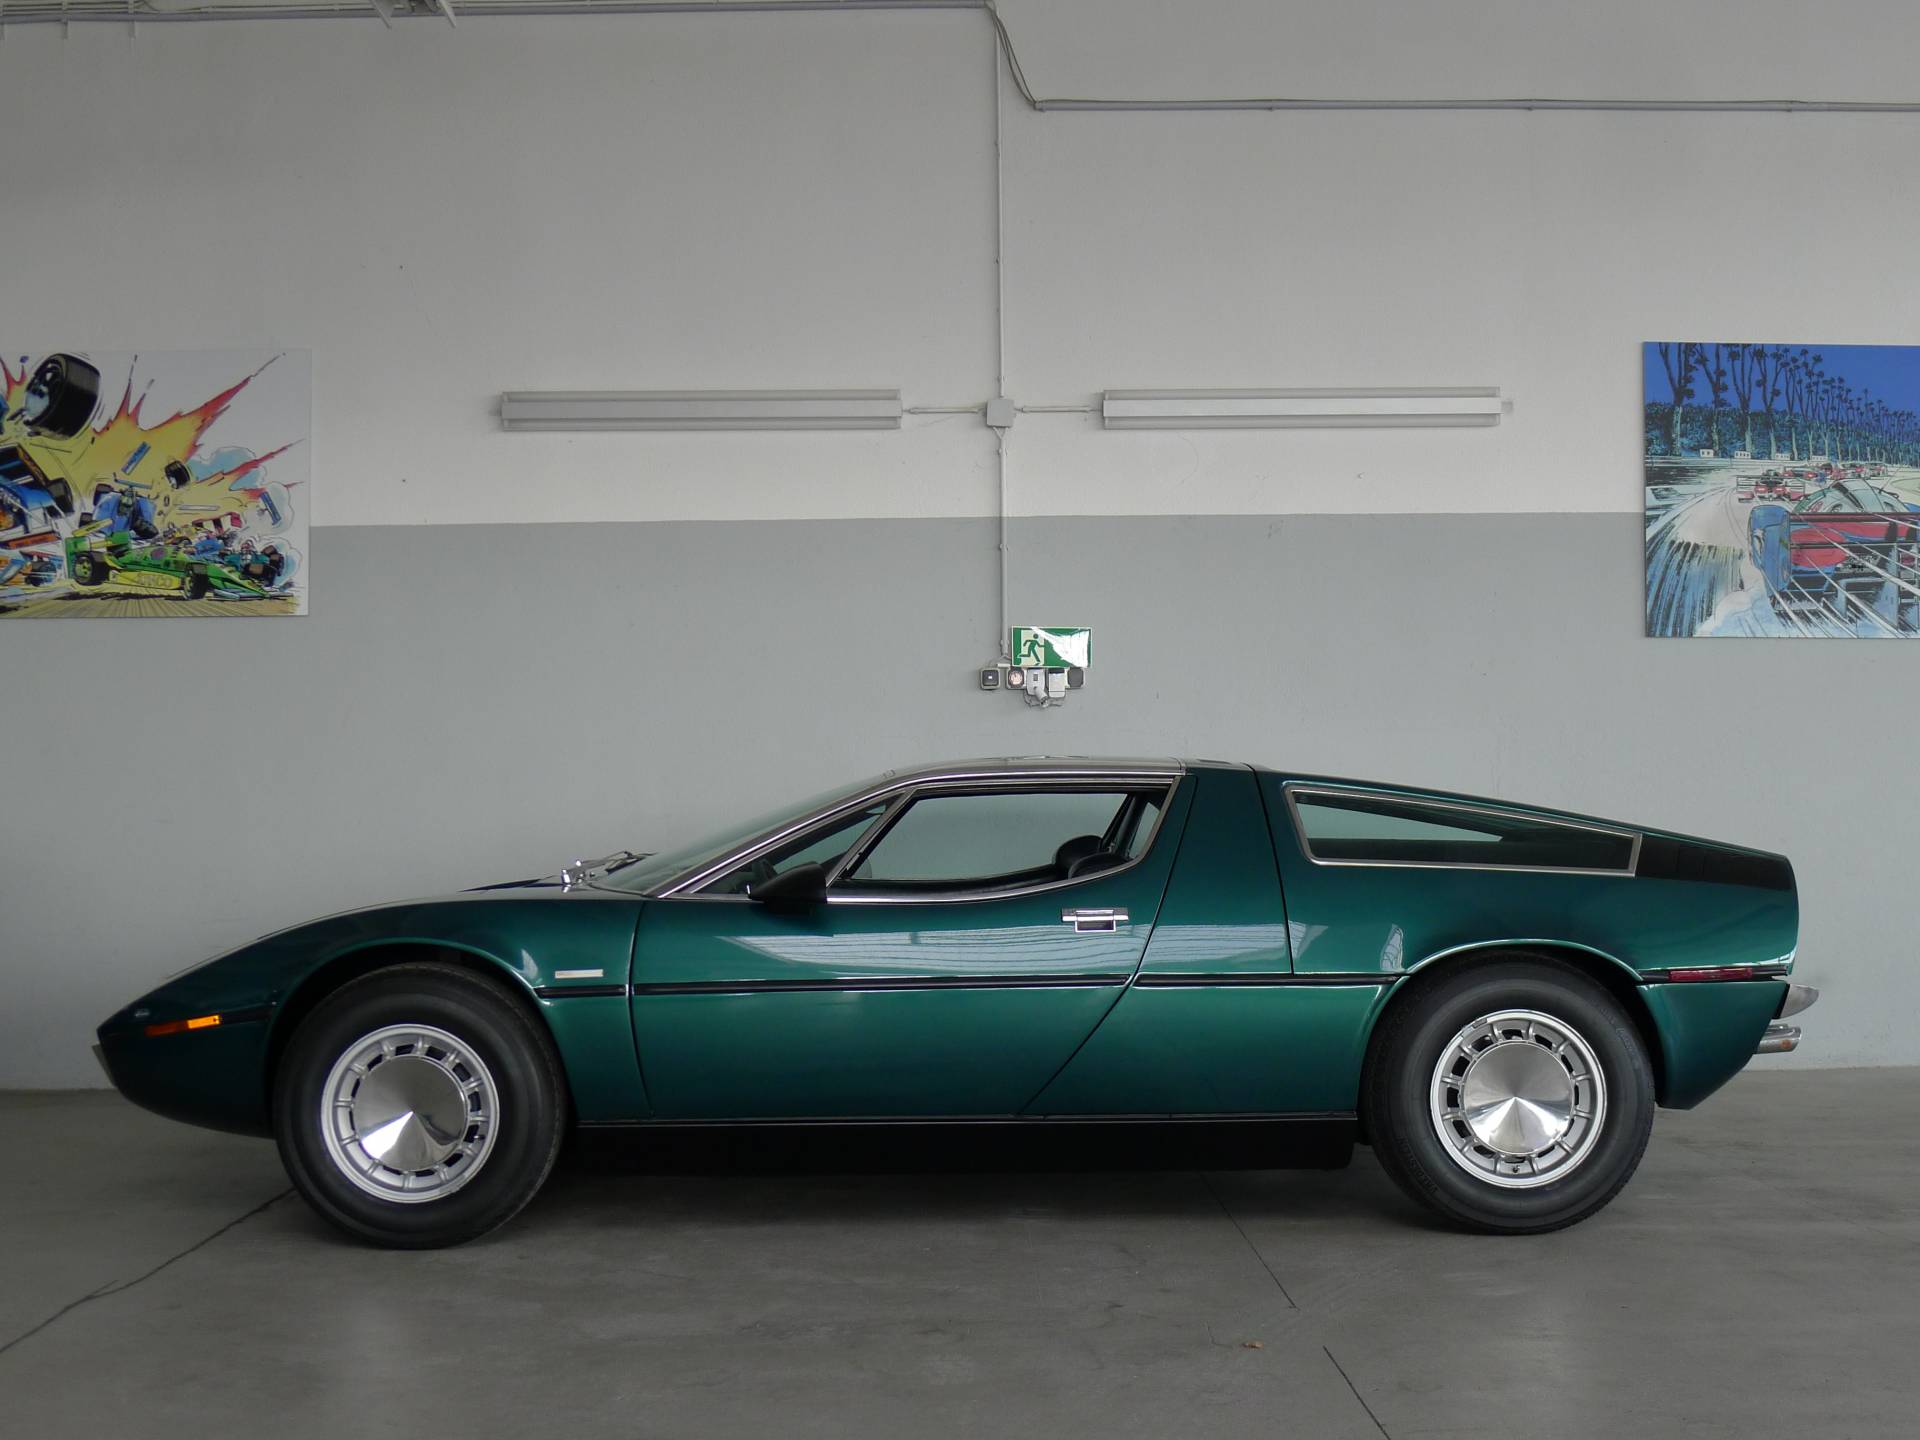 Maserati Bora 4700 (1973) für 179.950 EUR kaufen